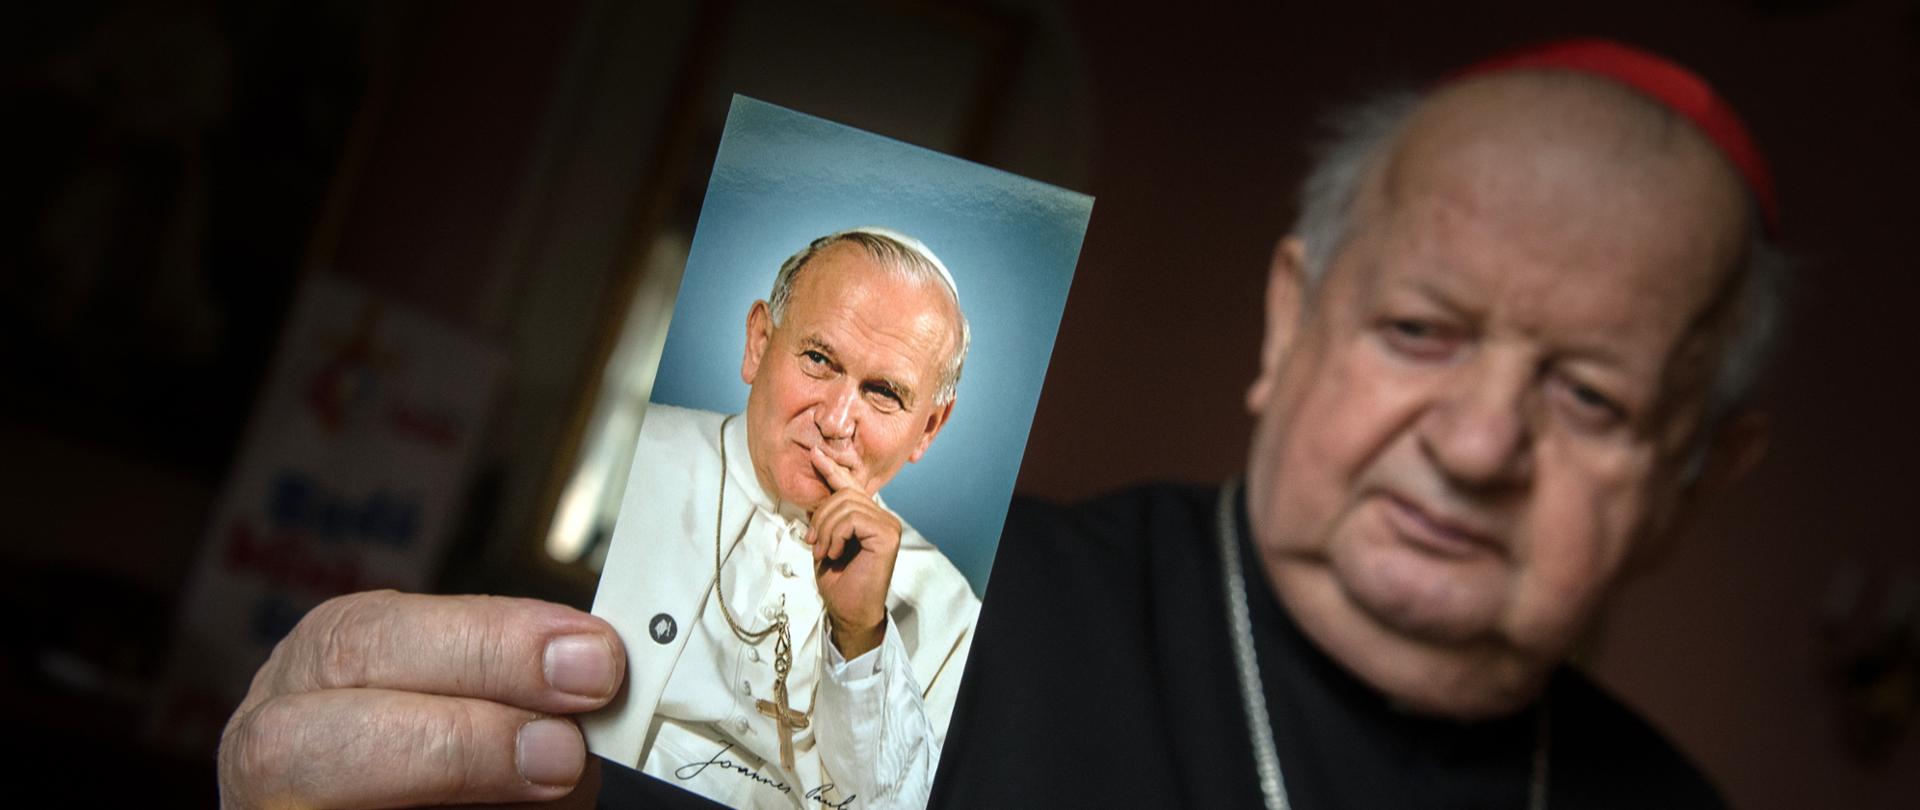 artykuł kardynała S. Dziwisz zamieścił w magazynie opinii "Wszystko co najważniejsze" "Jan Paweł II wyprzedził swój czas"